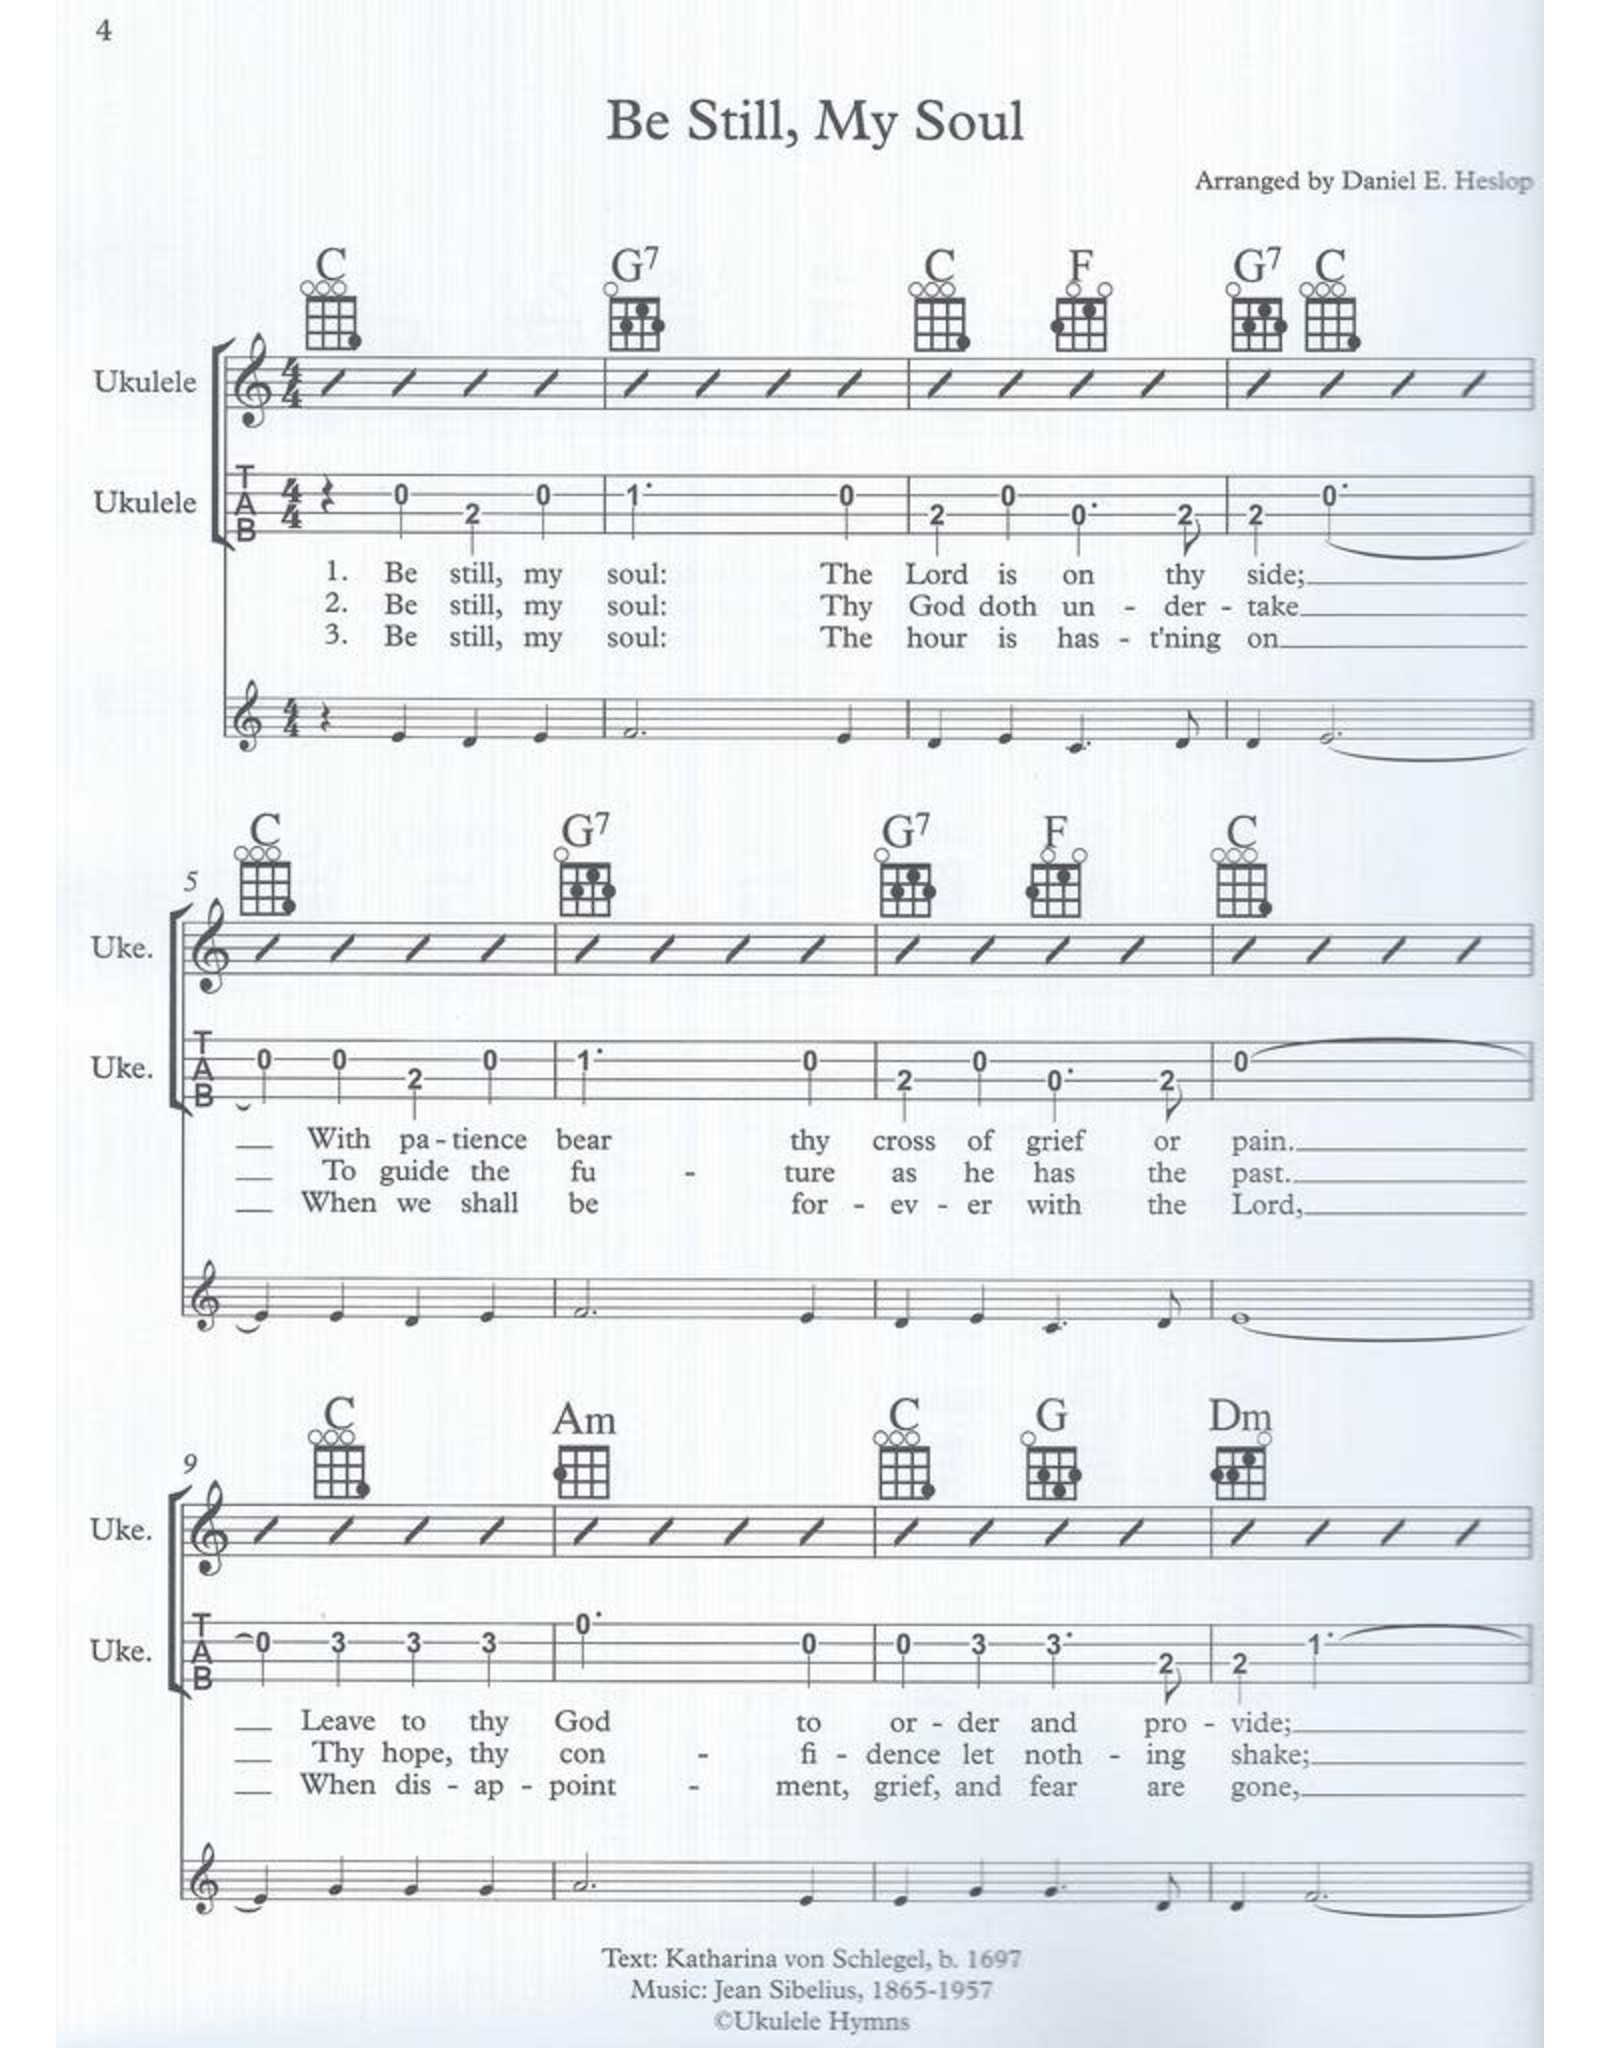 Danny Heslop Music Ukulele Hymns Vol. 1 arr. Danny Heslop